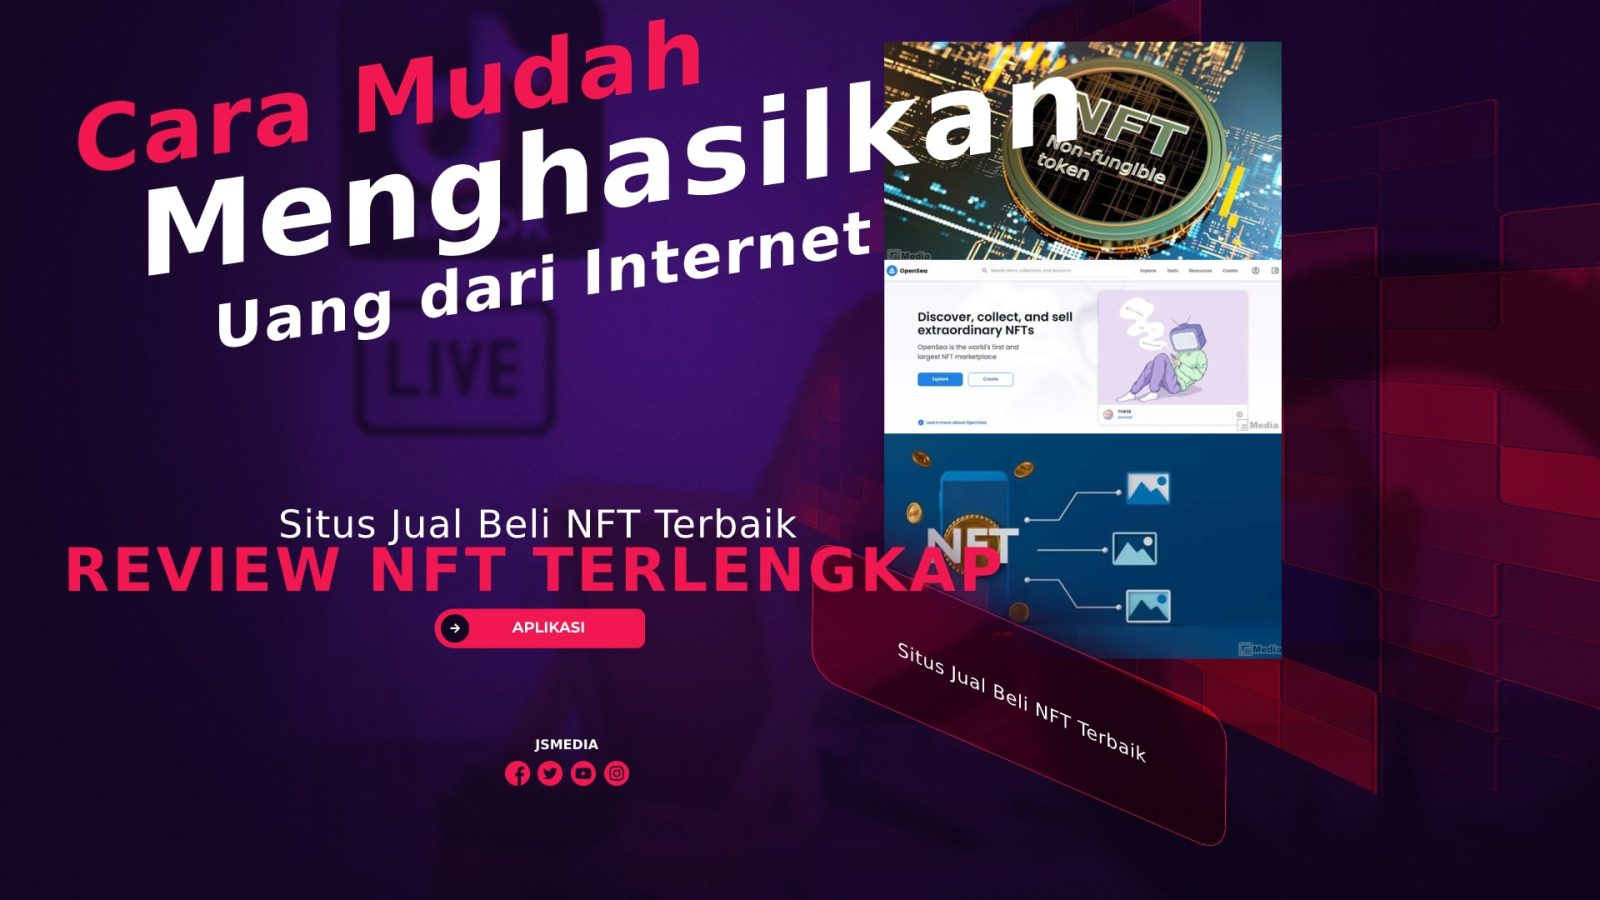 Situs Jual Beli NFT Terbaik Untuk Menghasilkan Uang dari Internet